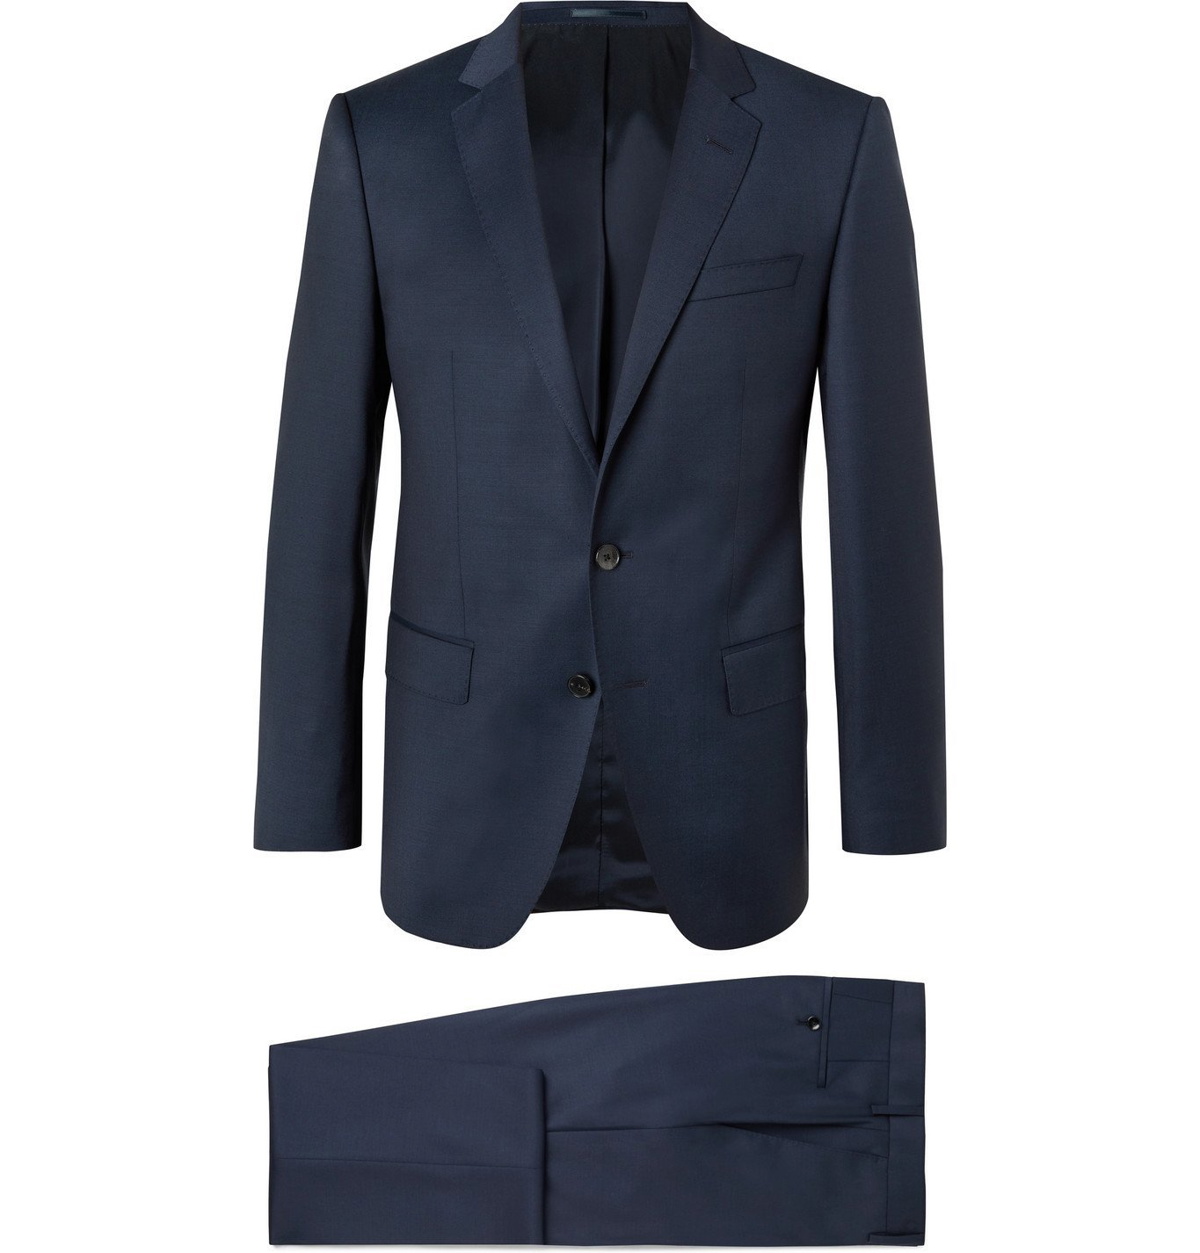 HUGO BOSS - Genius Slim-Fit Virgin Wool Suit - Blue Hugo Boss